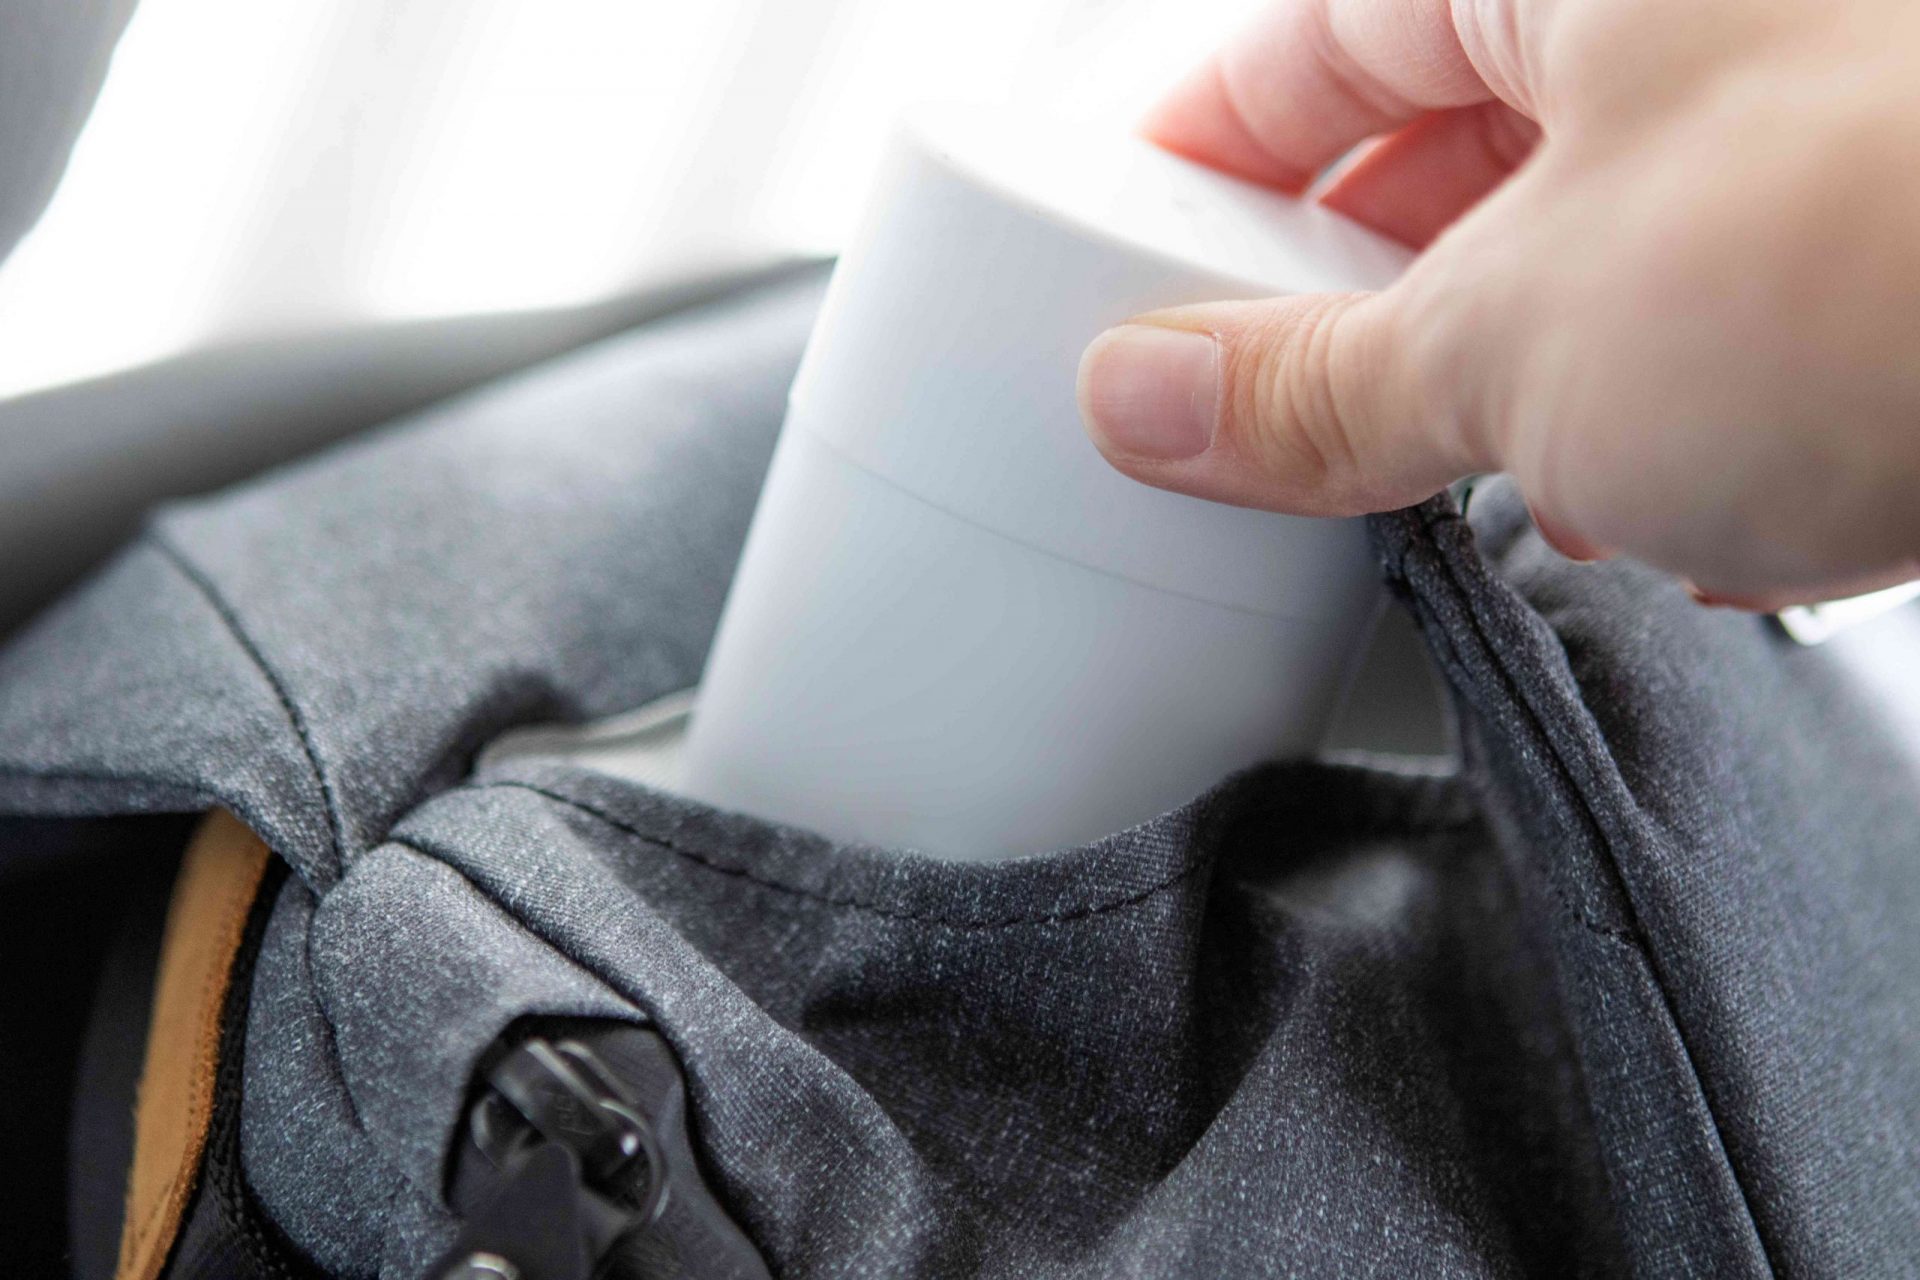 la mano coloca el desodorante en la mochila gris para poder reaplicarlo más tarde en el día